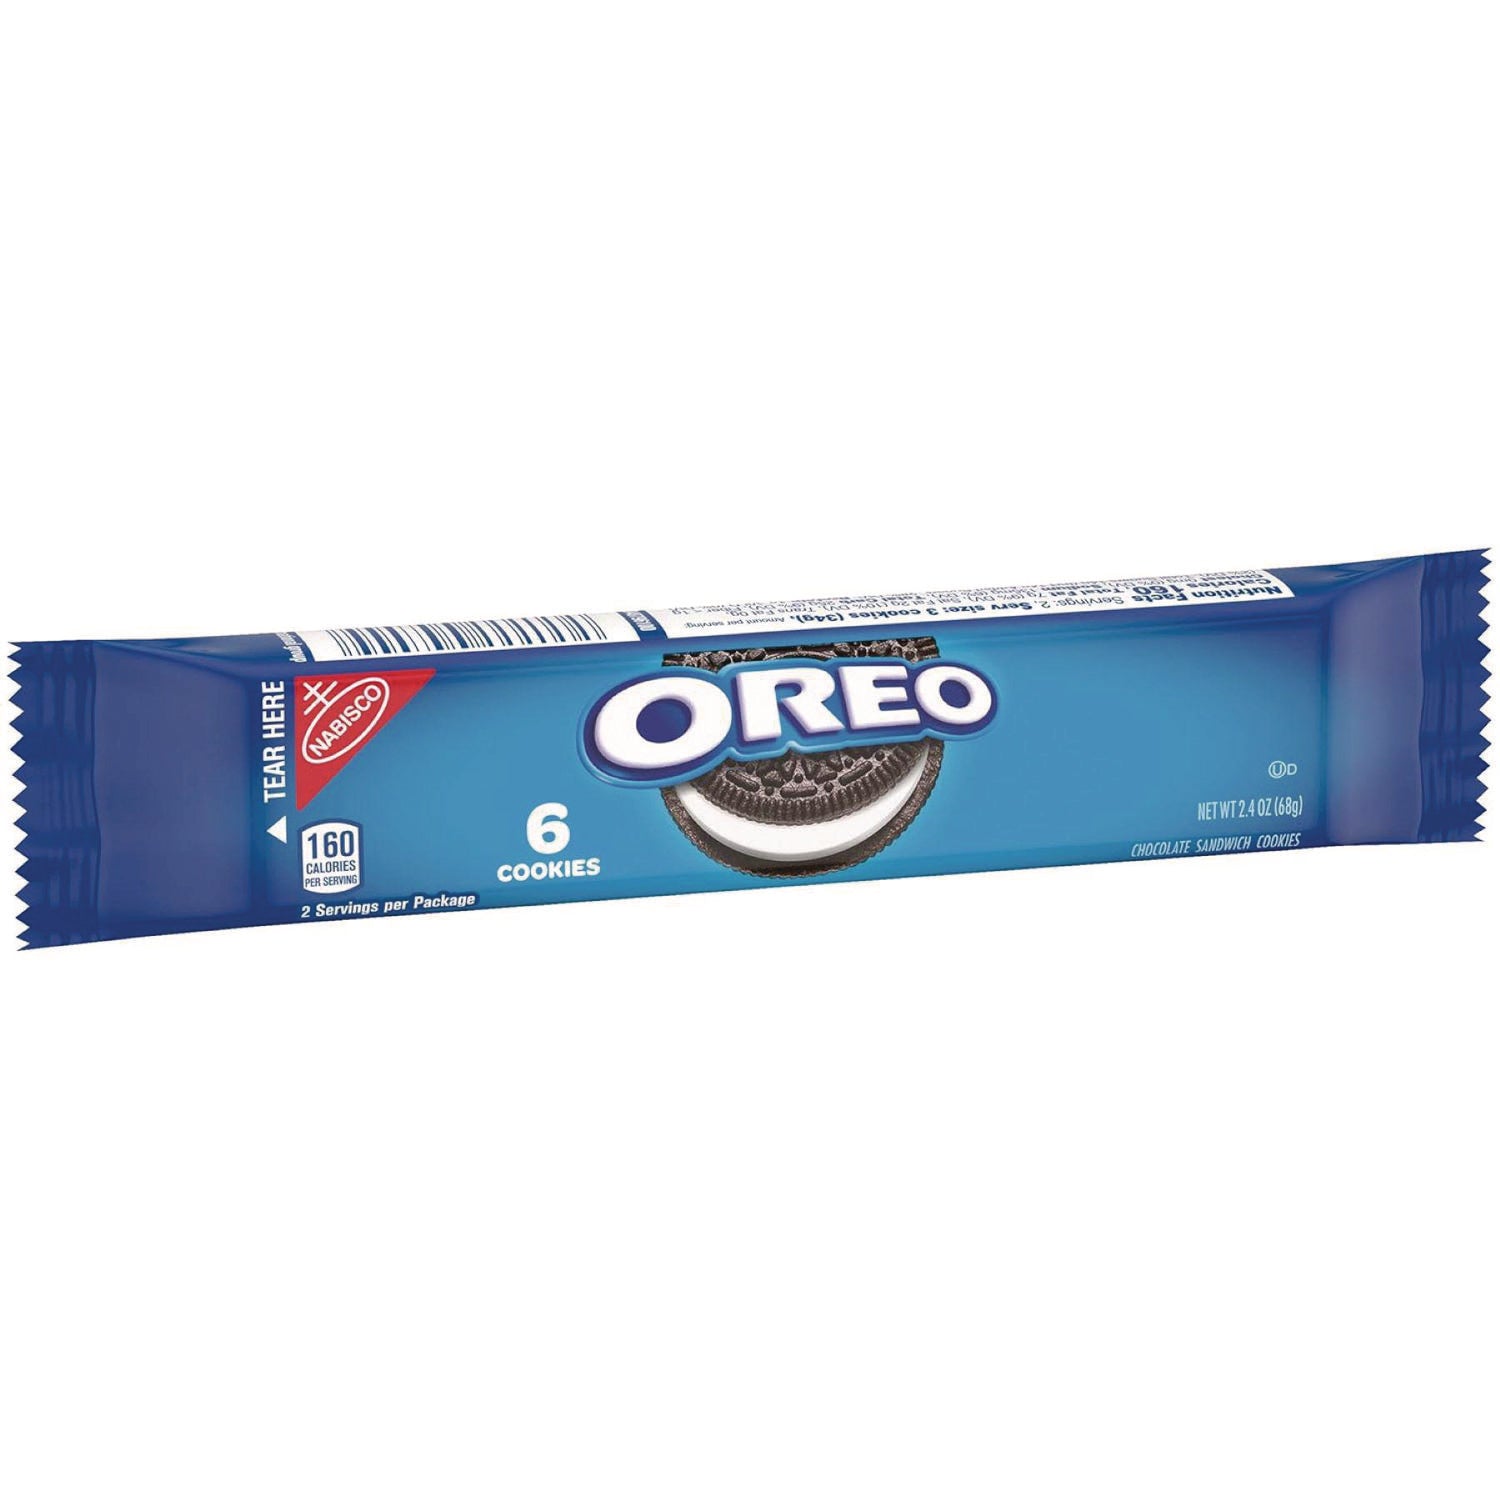 oreo-cookies-single-serve-packs-chocolate-24-oz-pack-6-cookies-pack-12-packs-box_cdb00470 - 2